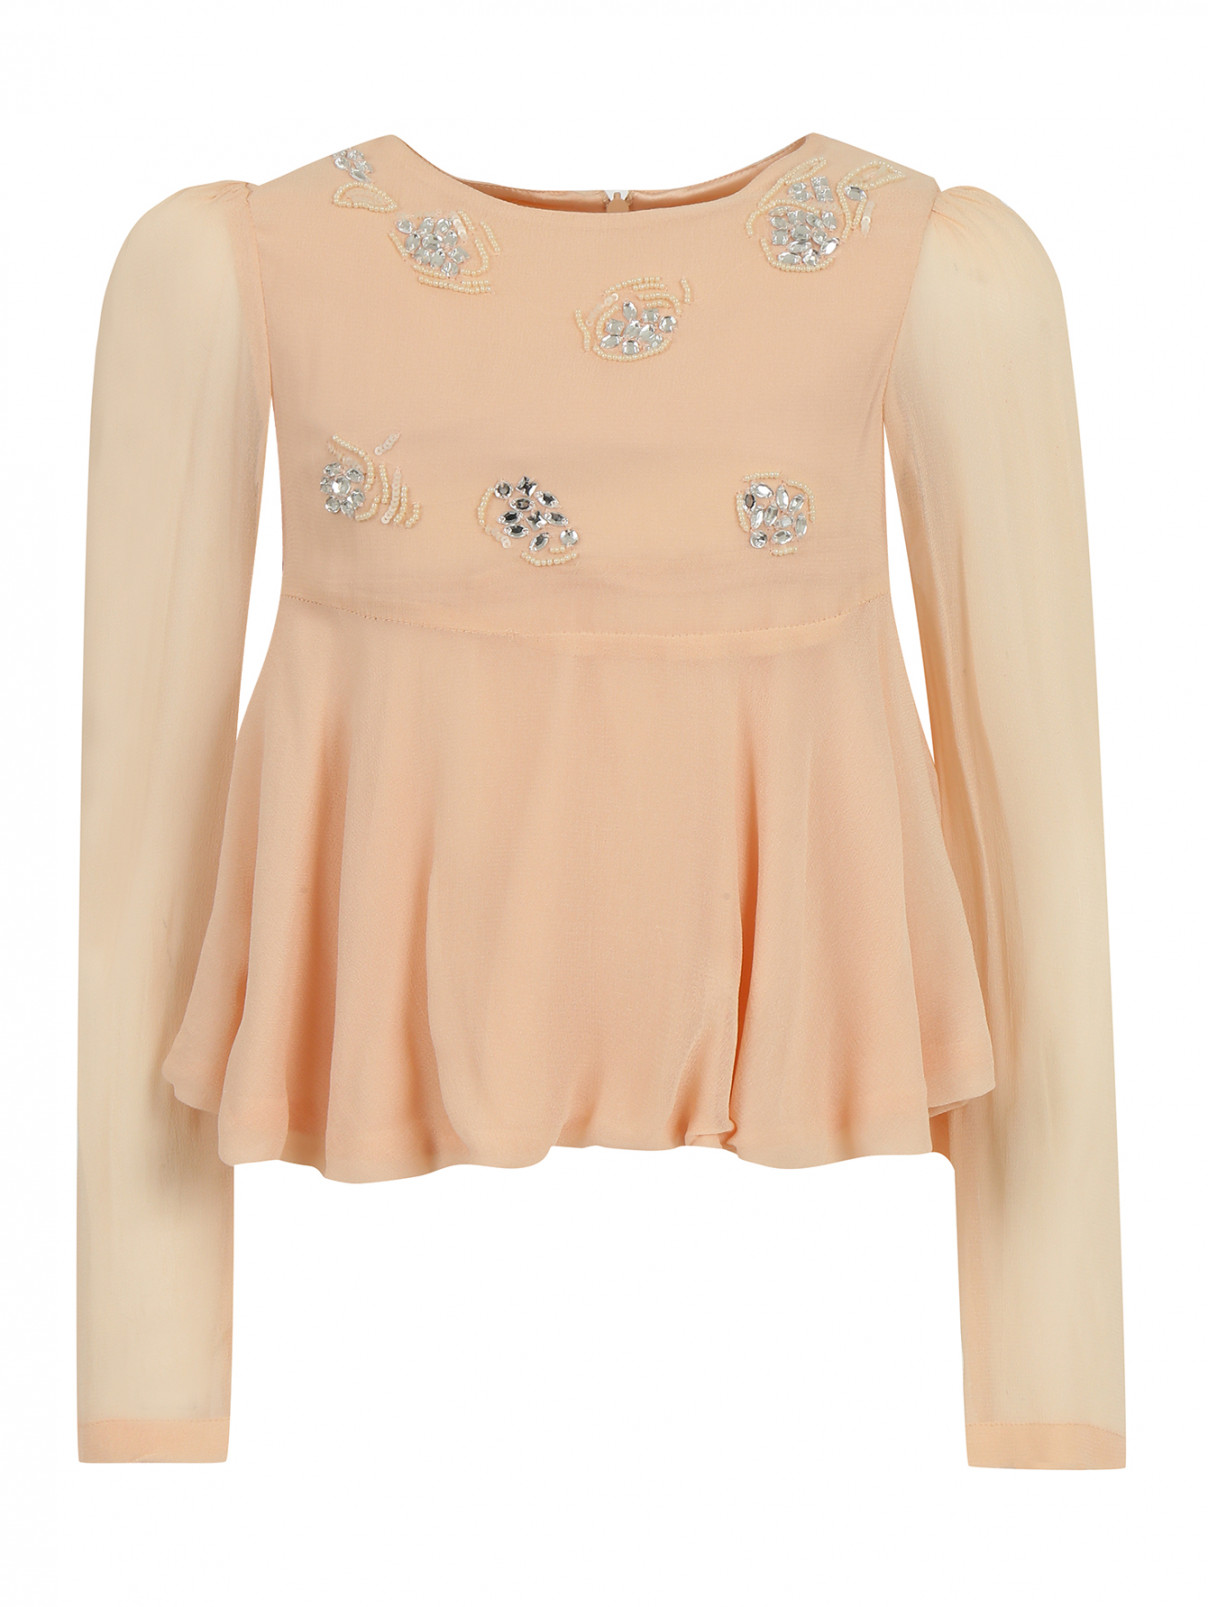 Блуза декорированная бисером и кристаллами I Pinco Pallino  –  Общий вид  – Цвет:  Розовый